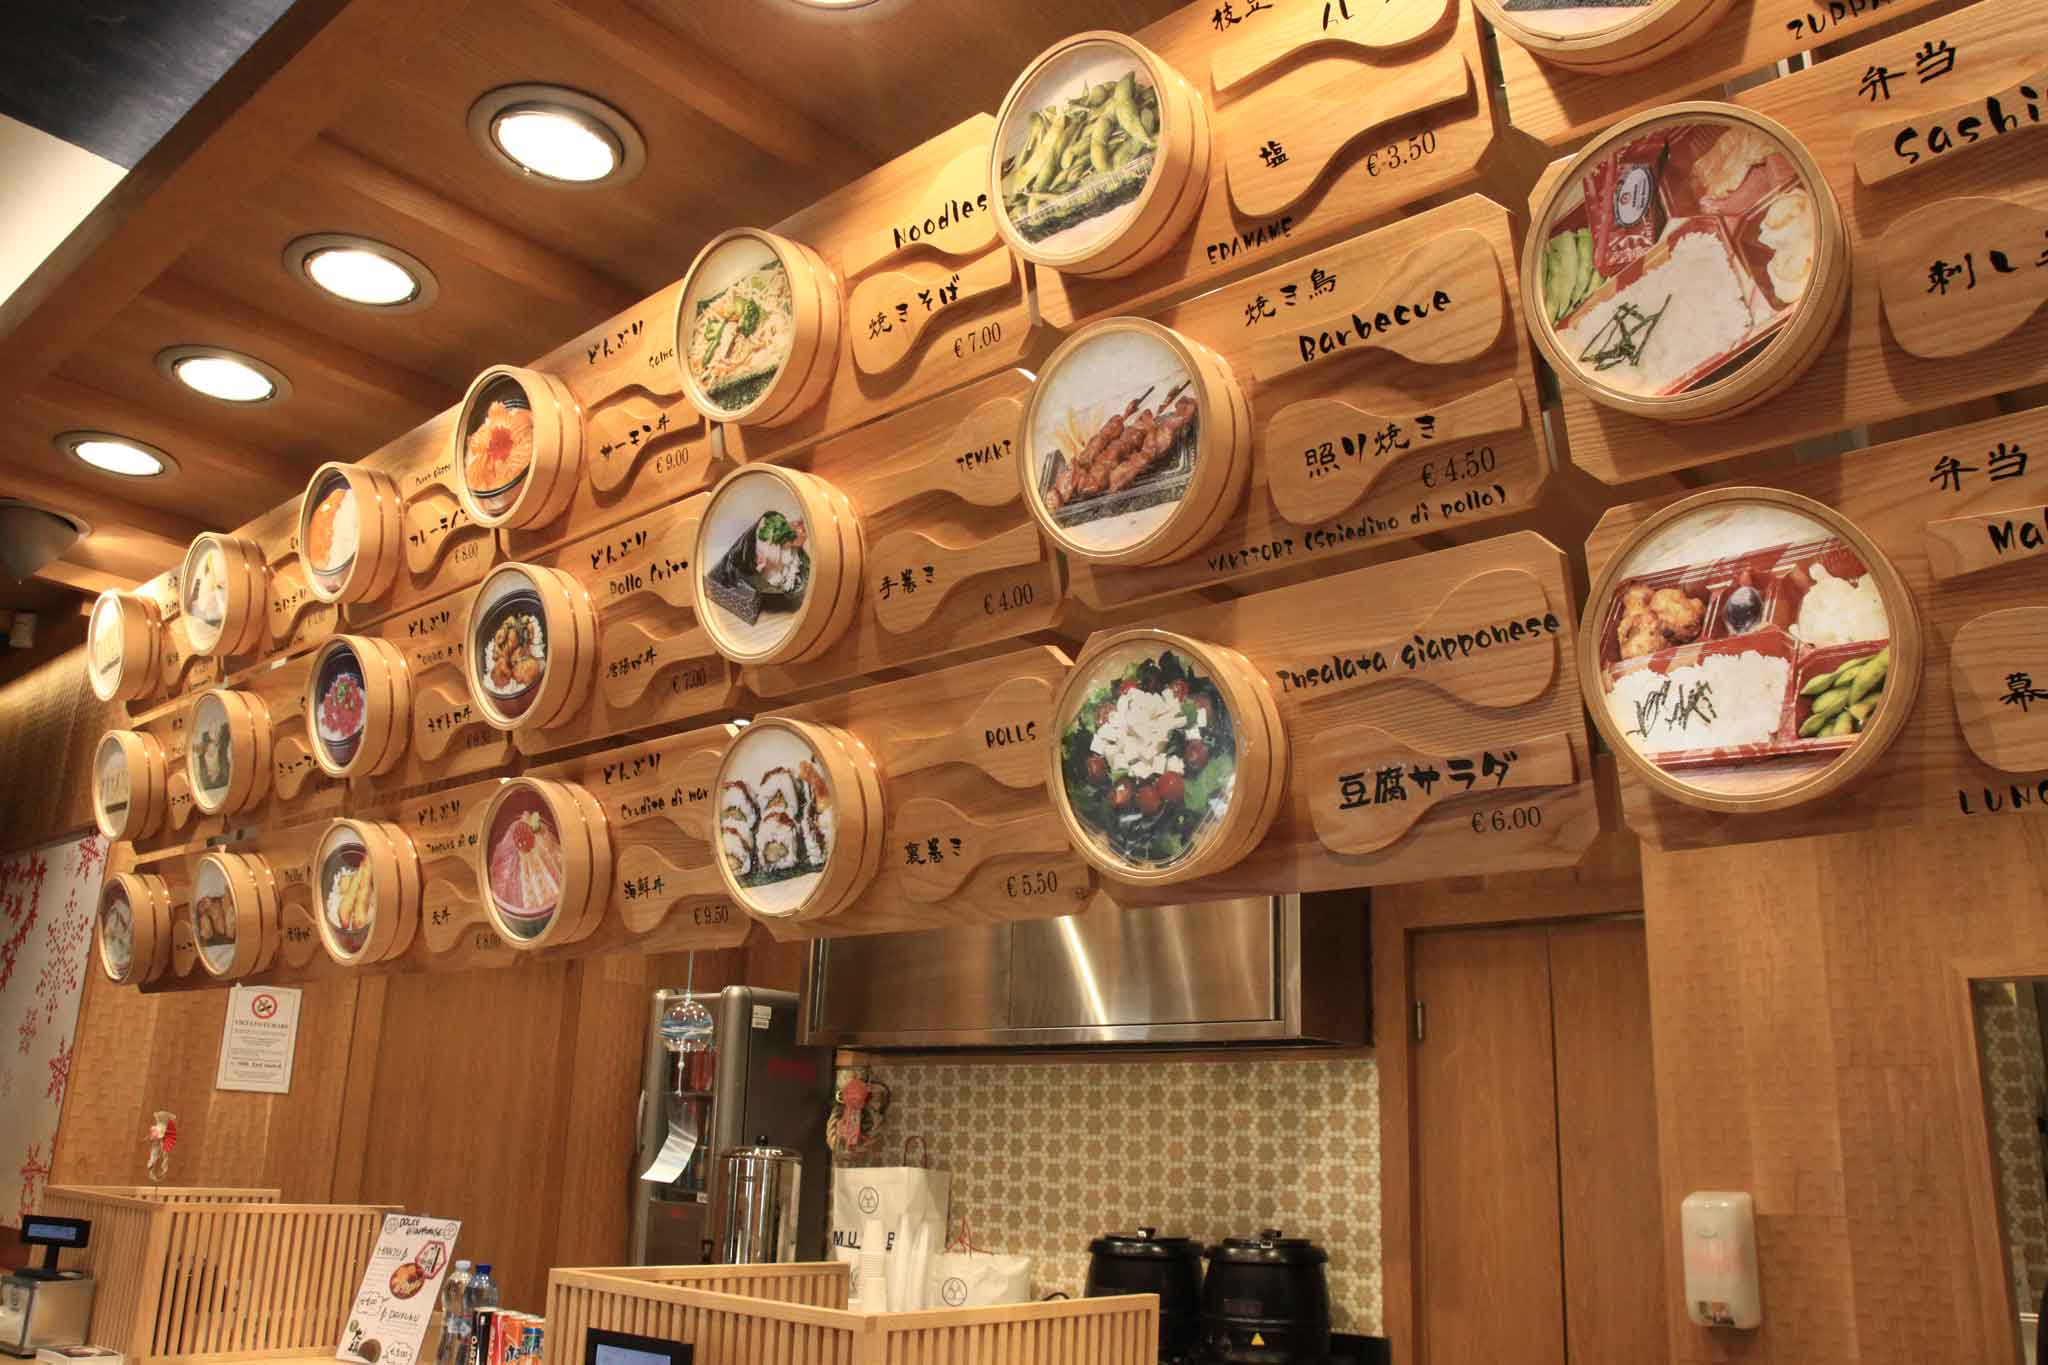 musubi take away giapponese menu santa radegonda chiusure